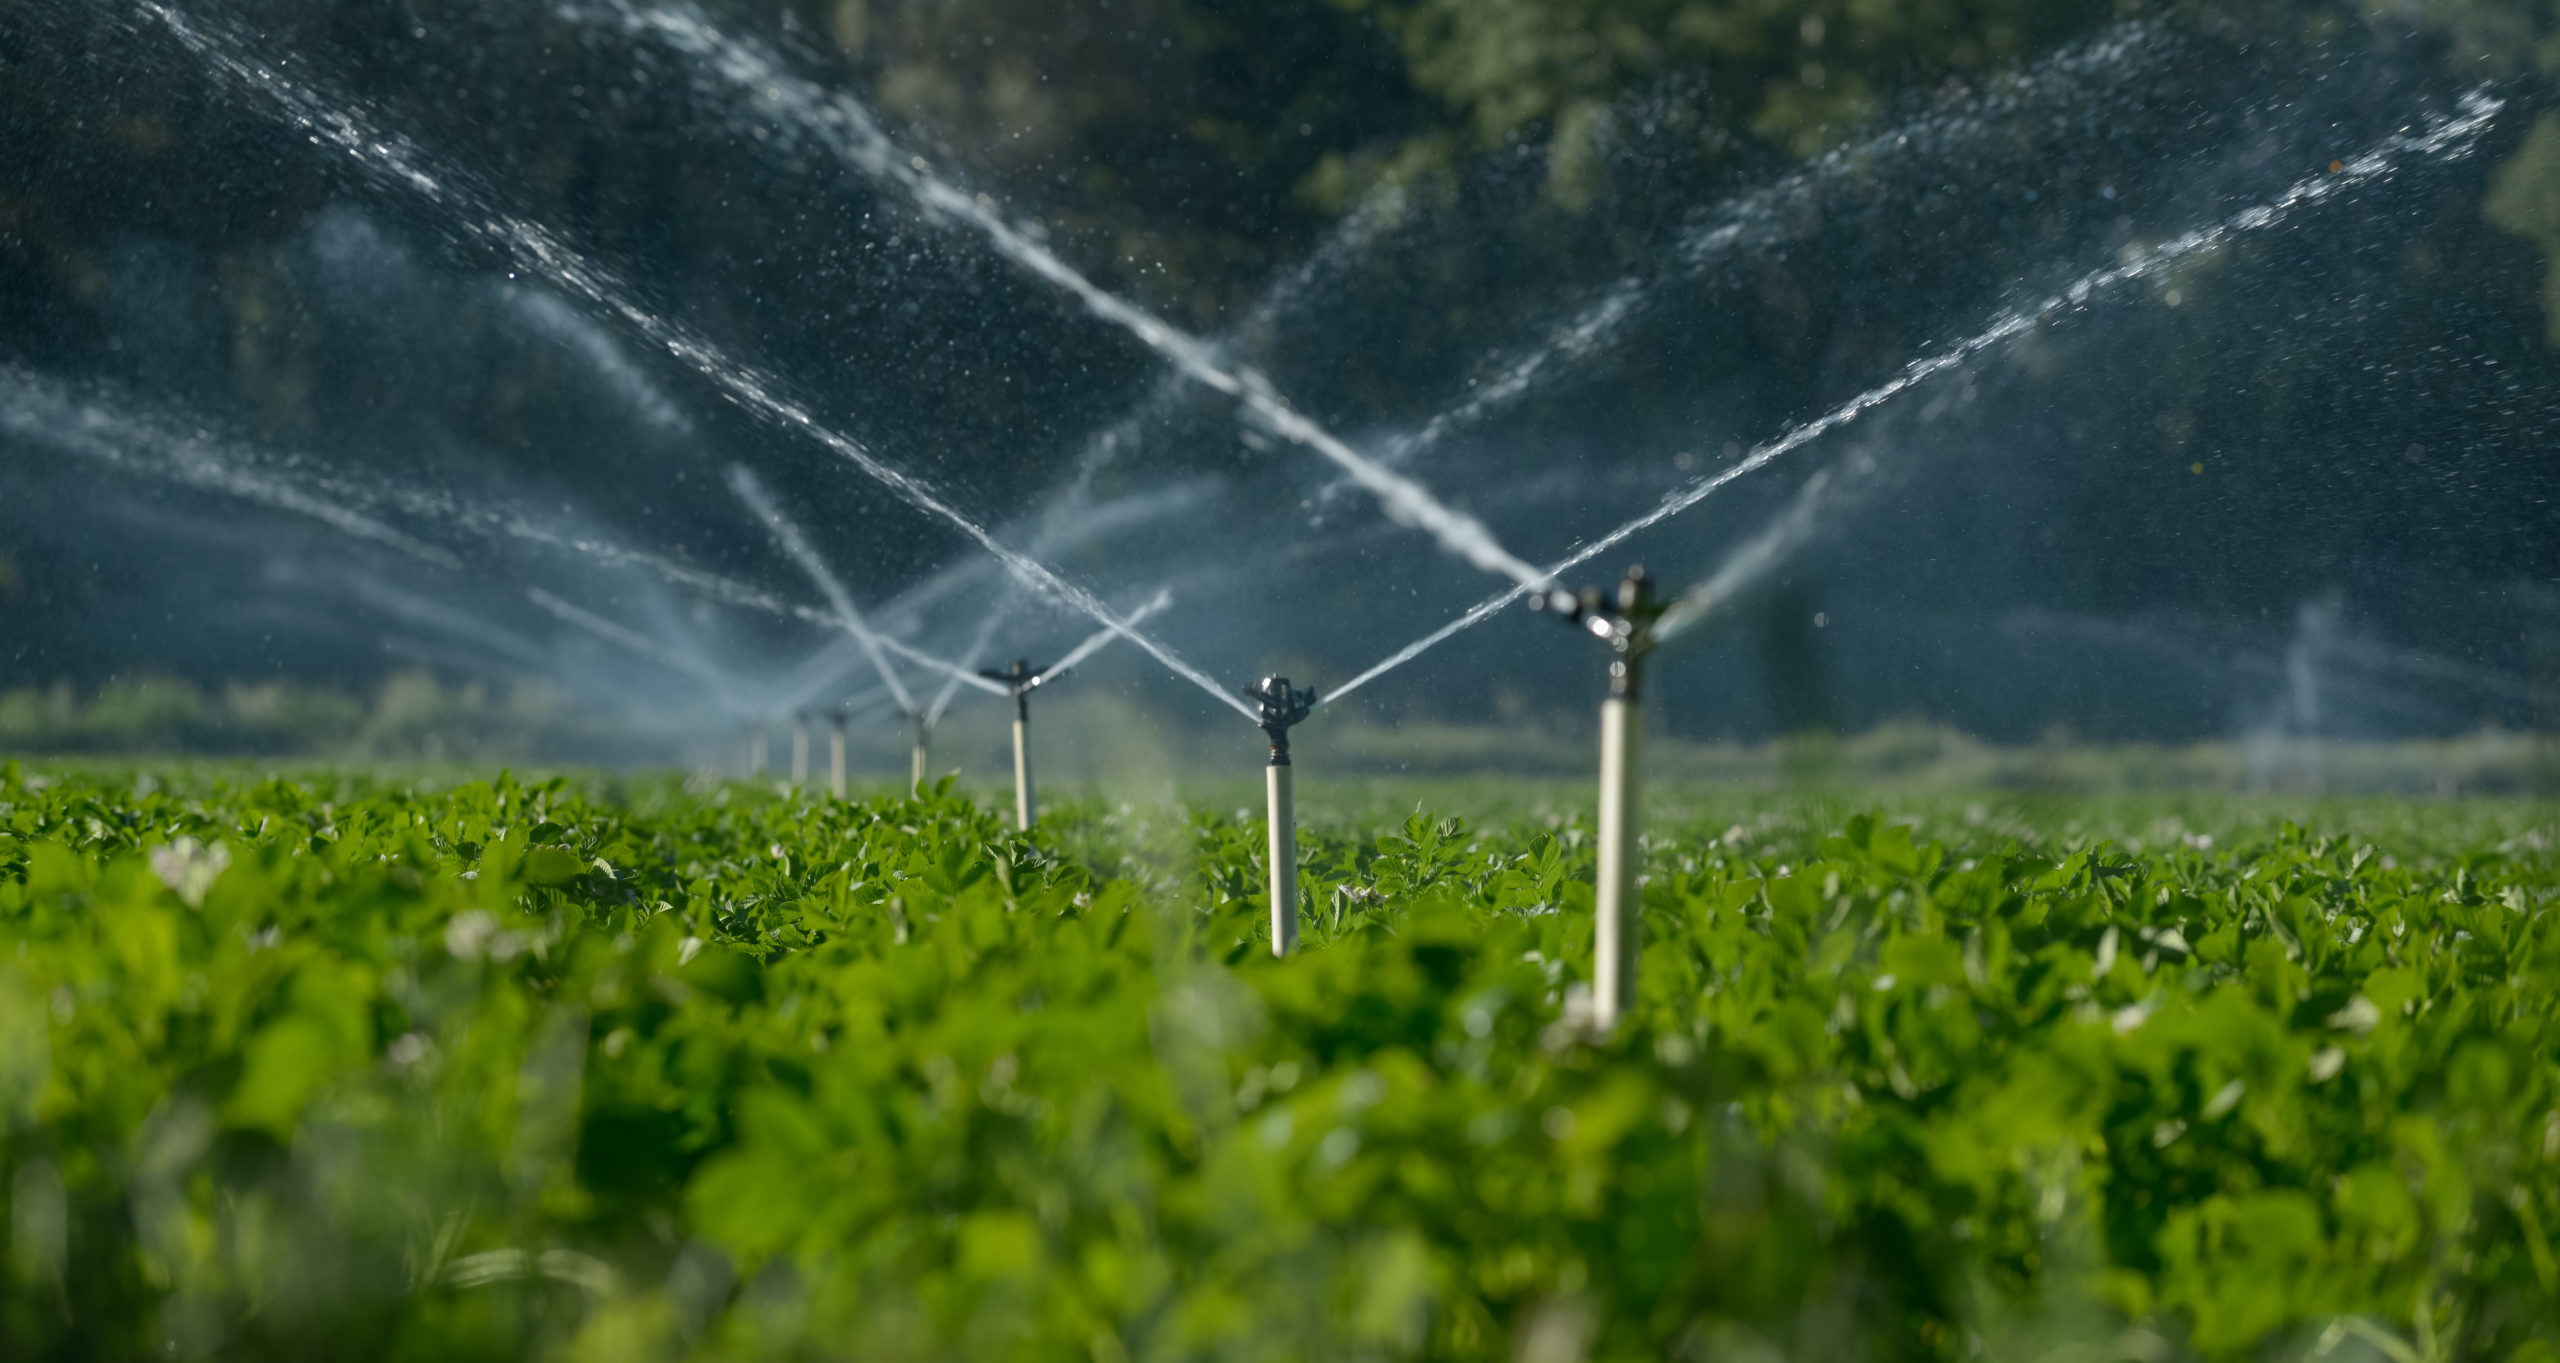 Water sprinklers irrigating a field